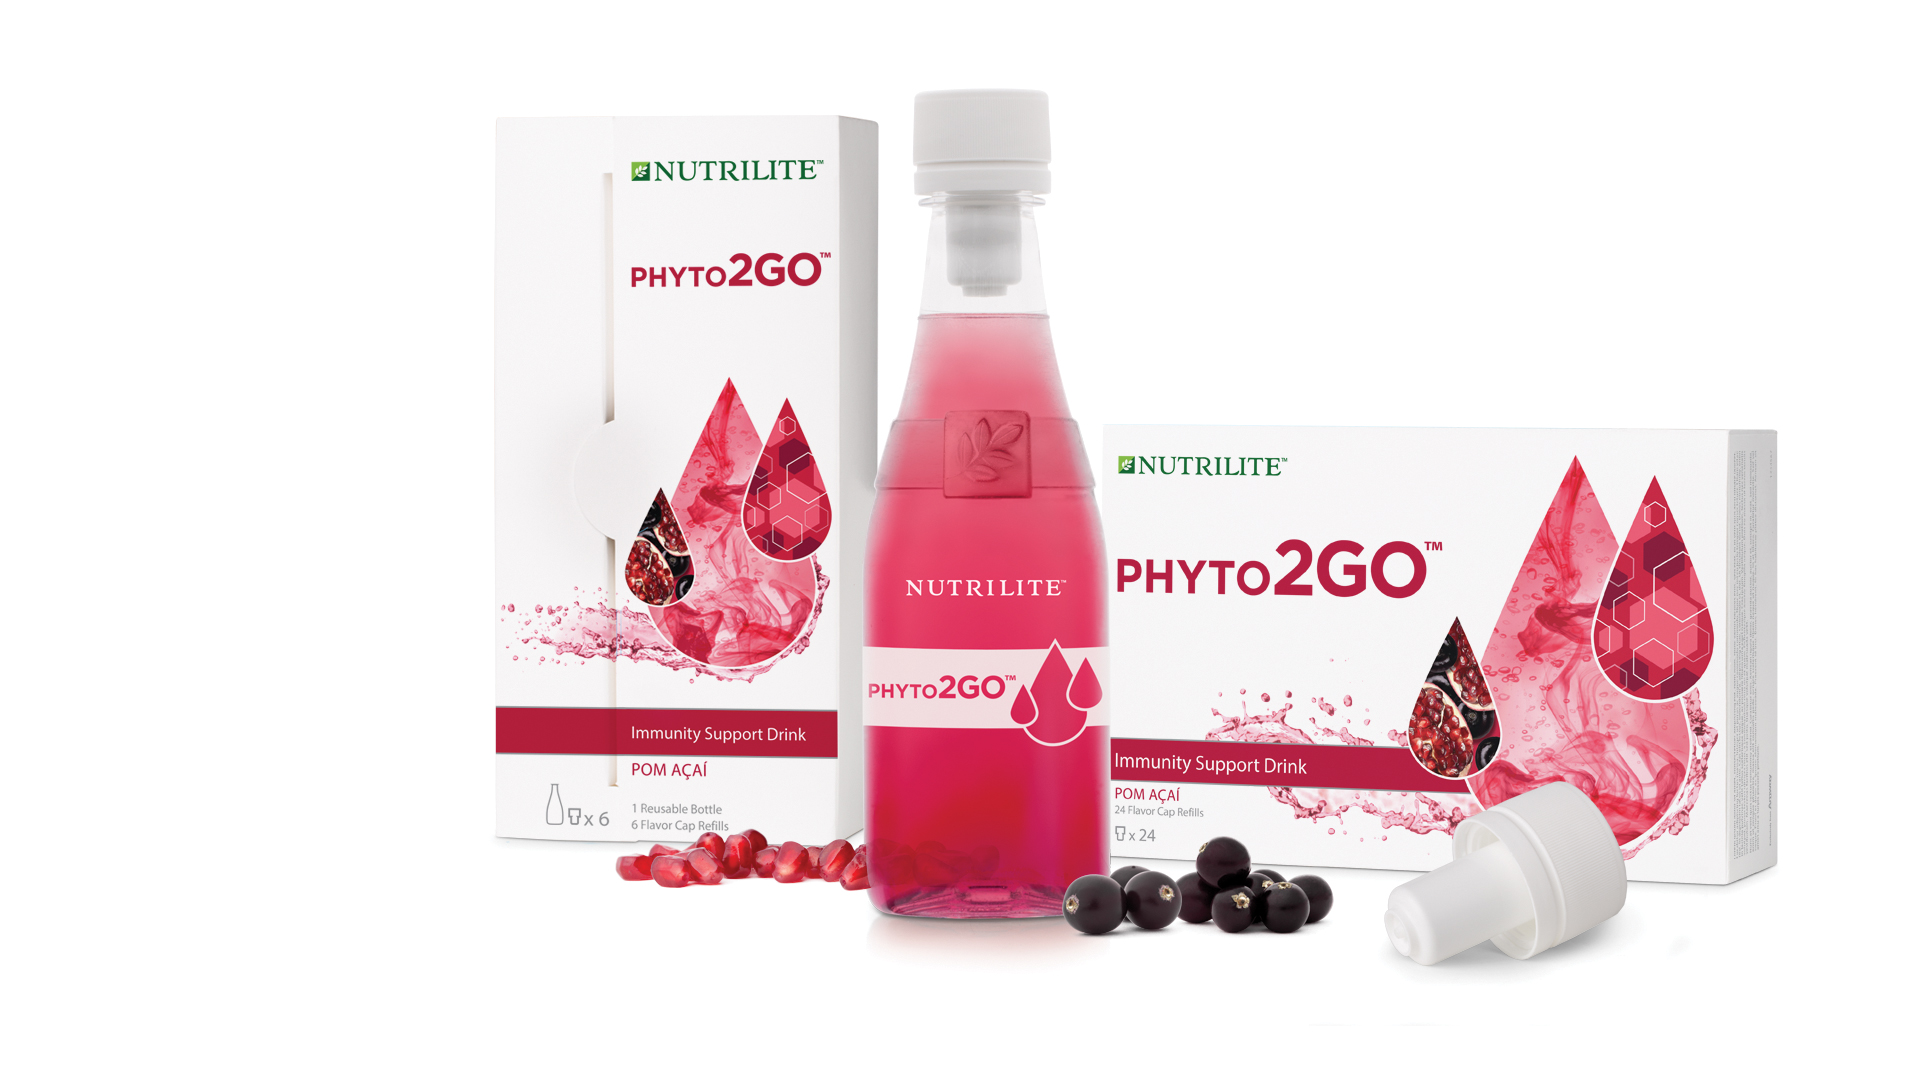 Dwa kroki do zwiększonej energii na wiosnę - nowe produkty NutriliteTM: Phyto2Go i Witamina B PLUS